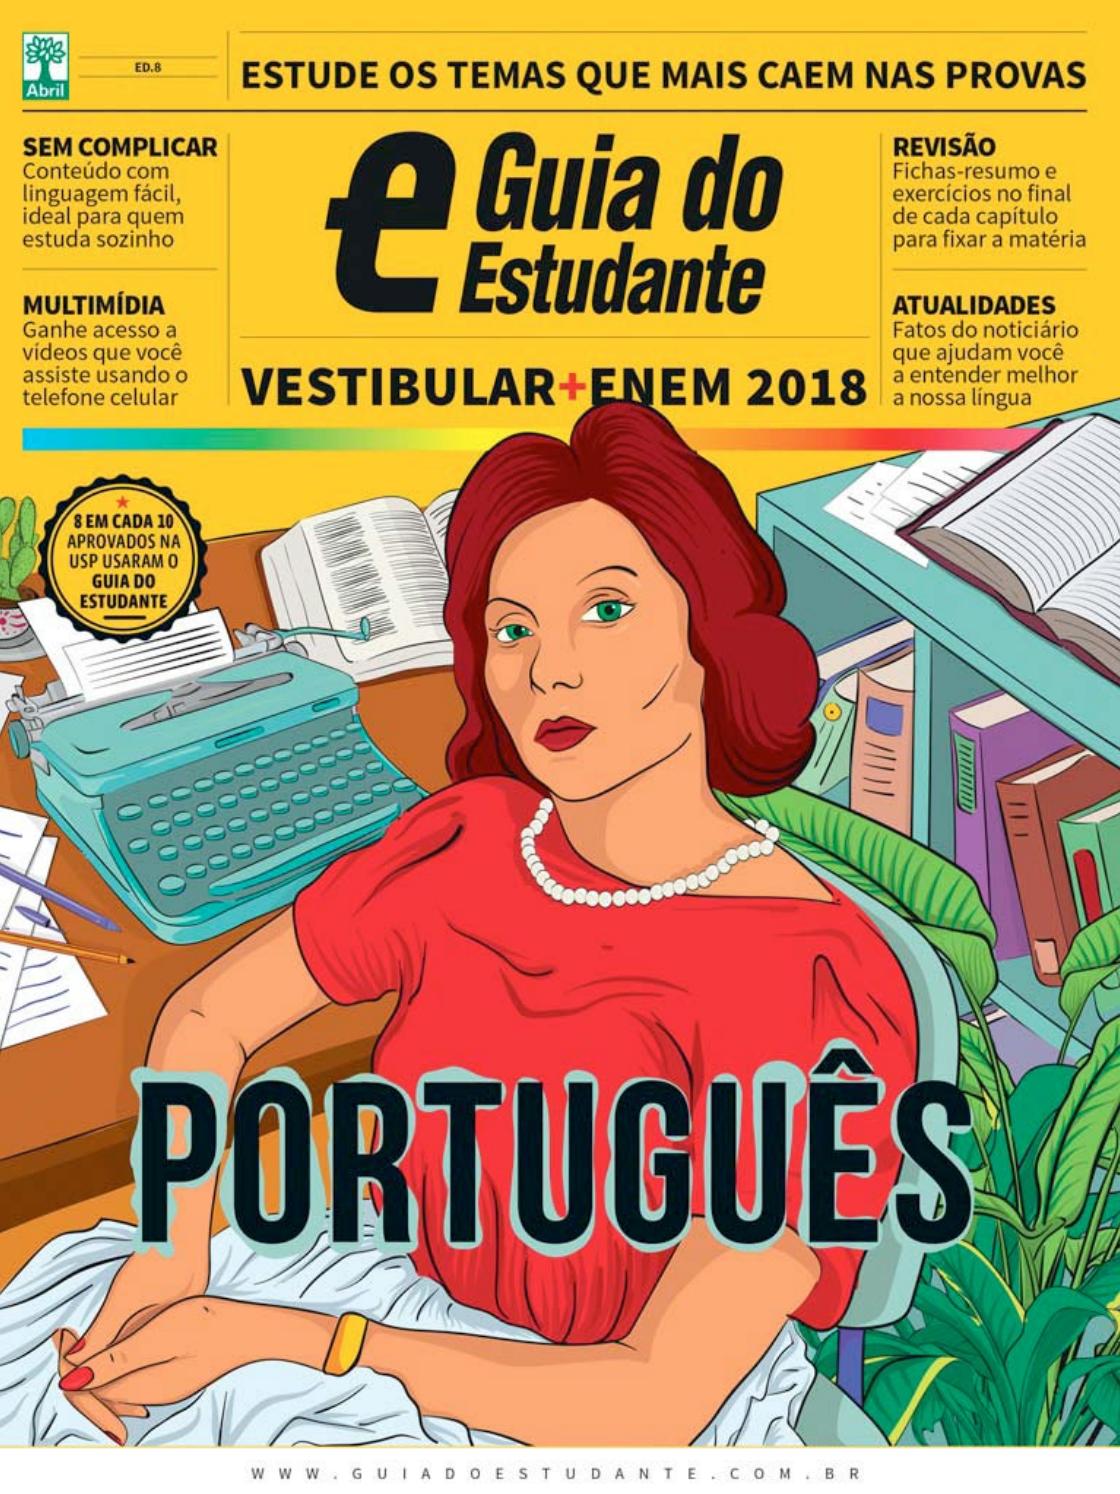 Anúncio erótico portugues 62790